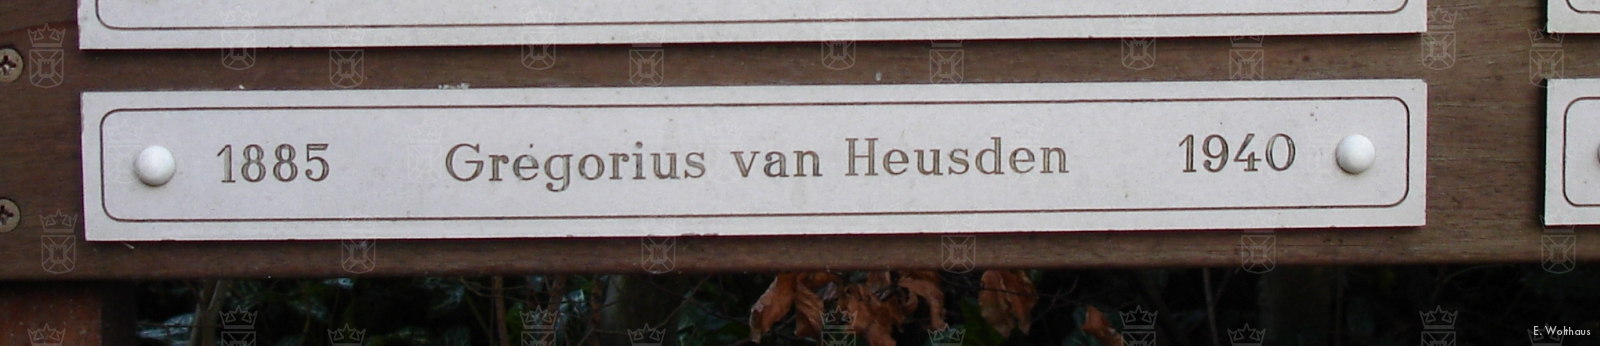 Het graf van Gregorius van Heusden is inmiddels geruimd, zijn naam is nog terug te vinden op een plaquette.